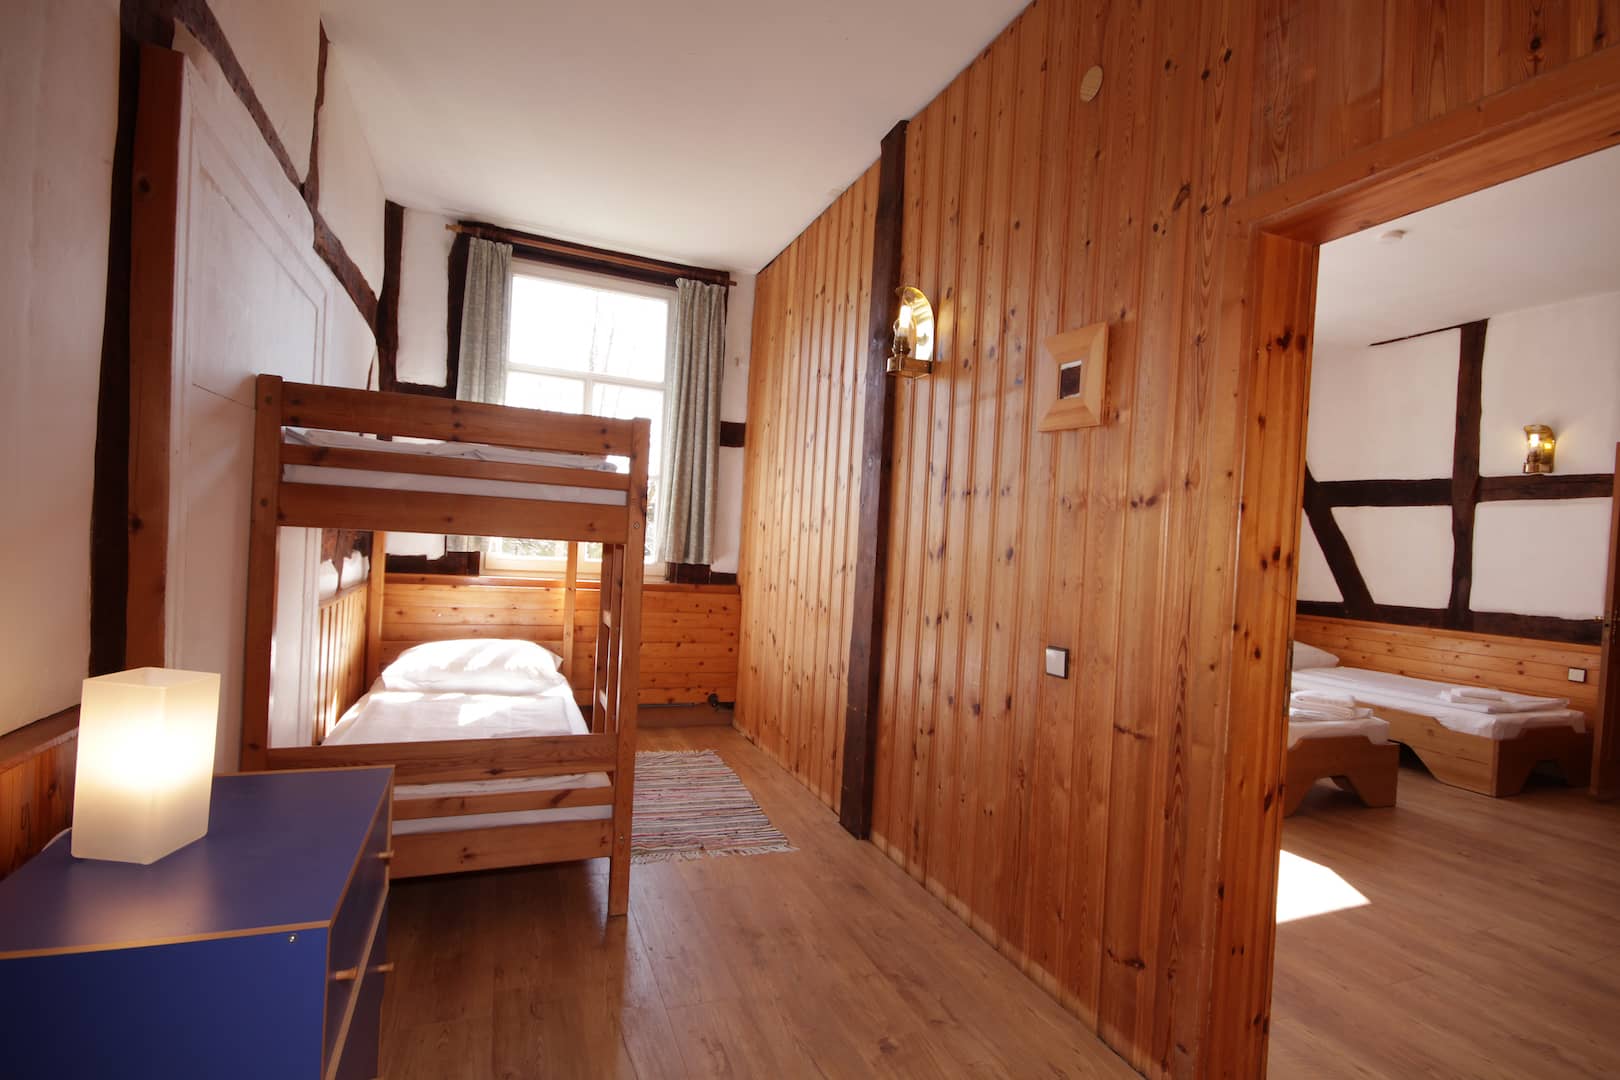 Schlafraum mit Etagenbett für 2 Personen, Durchgangszimmer, Apartment 25 - Teil der Fewo Bär